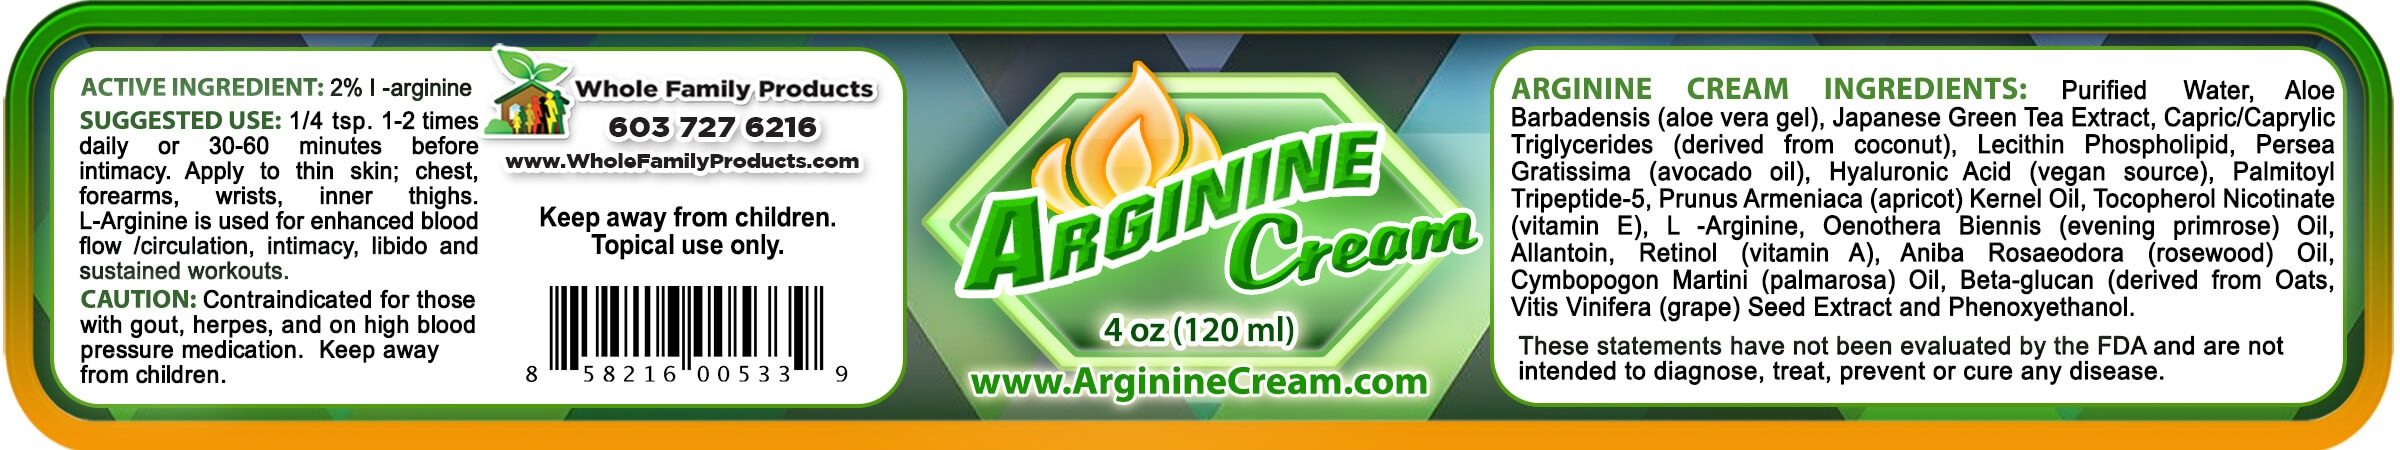 Arginine Cream 2% L Arginine 4oz Jar Product Label